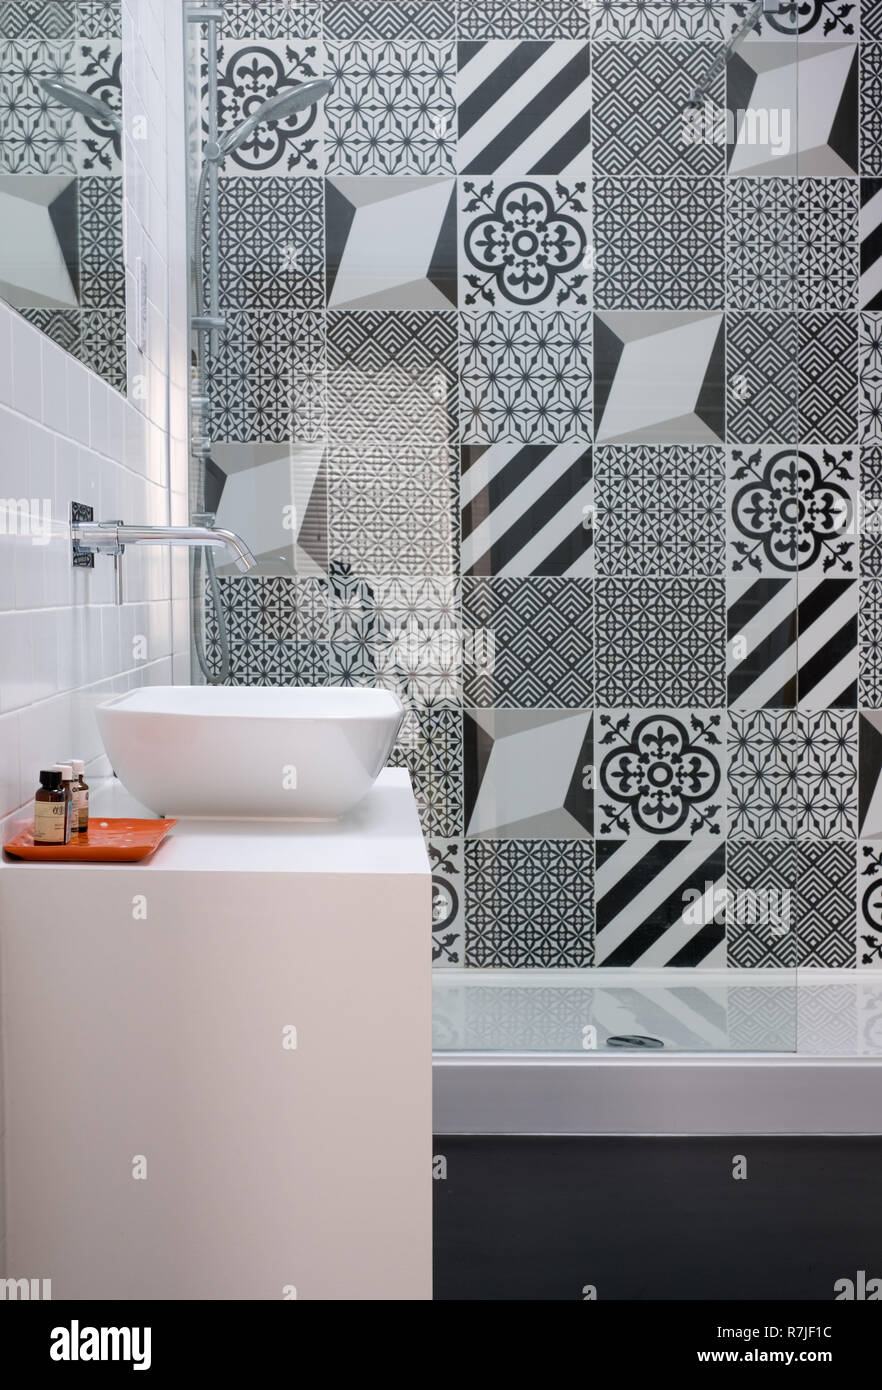 Moderne loft Badezimmer mit hoher Decke, begehbare Dusche und eine schwarze  und weiße monochrome Porzellan Wandfliesen Stockfotografie - Alamy